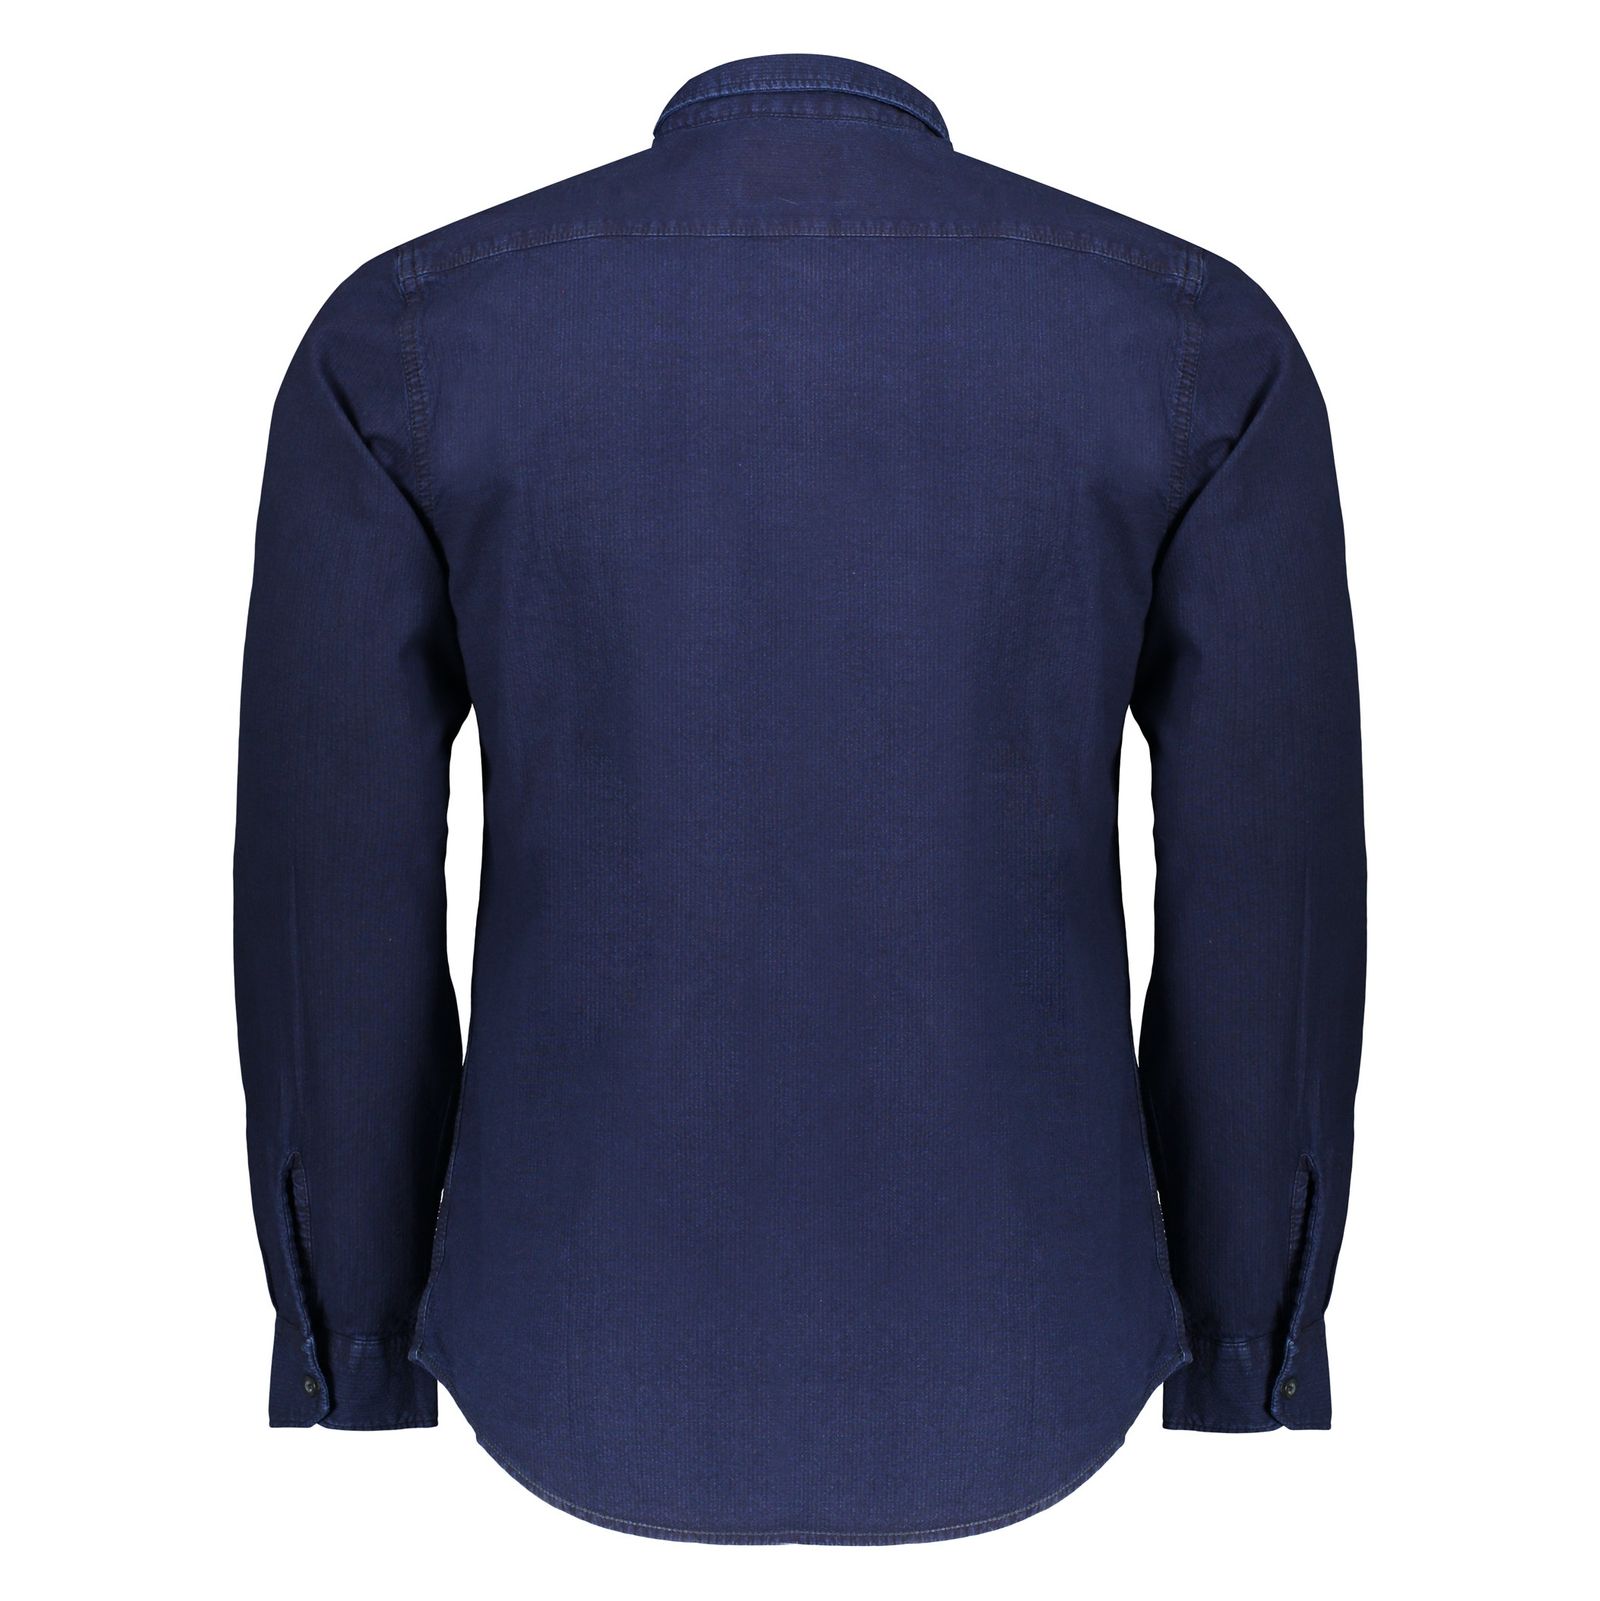 پیراهن مردانه اسپرینگ فیلد مدل 0296201-12 - سرمه ای - 4